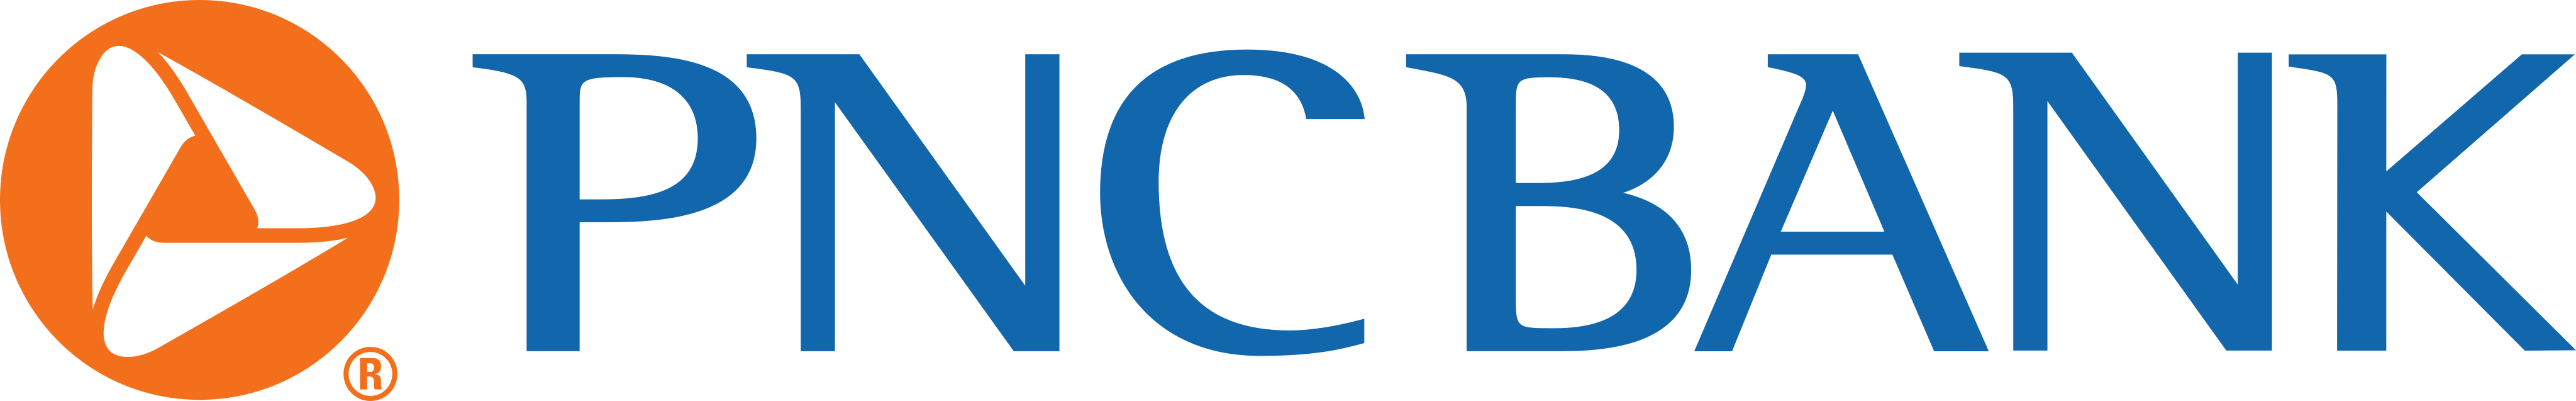 pnc-bank-logo-1